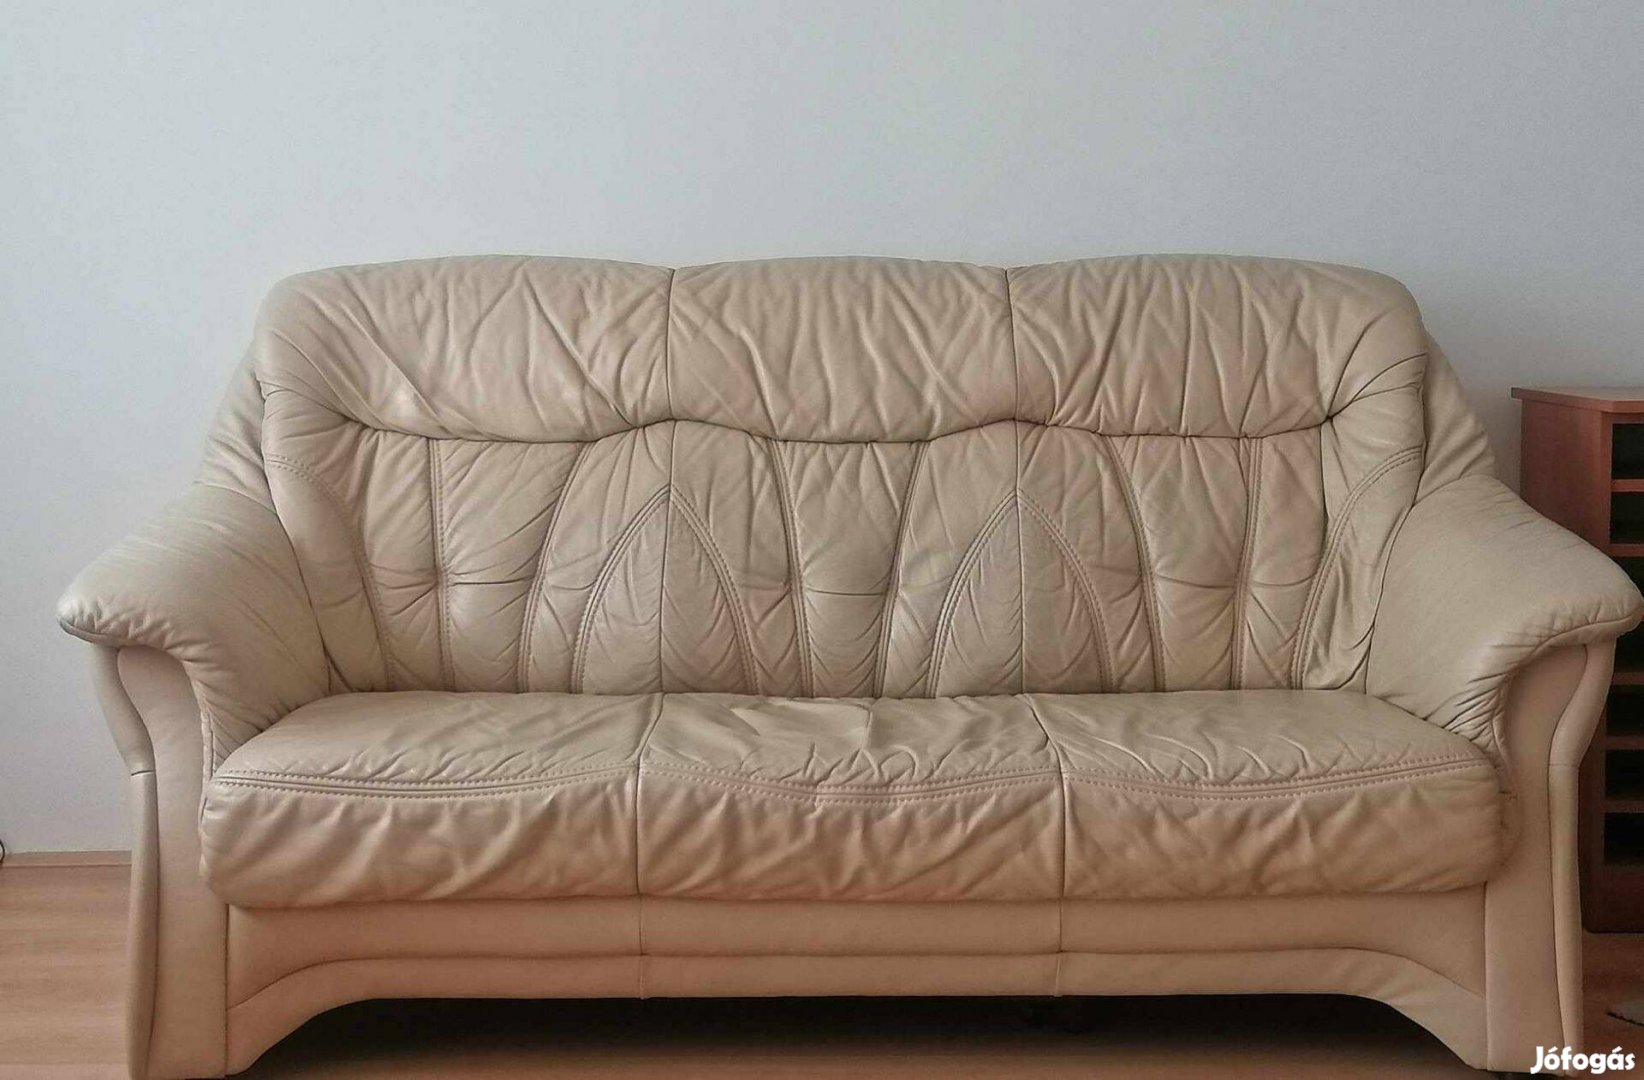 Eladő bőr kanapé két fotellal